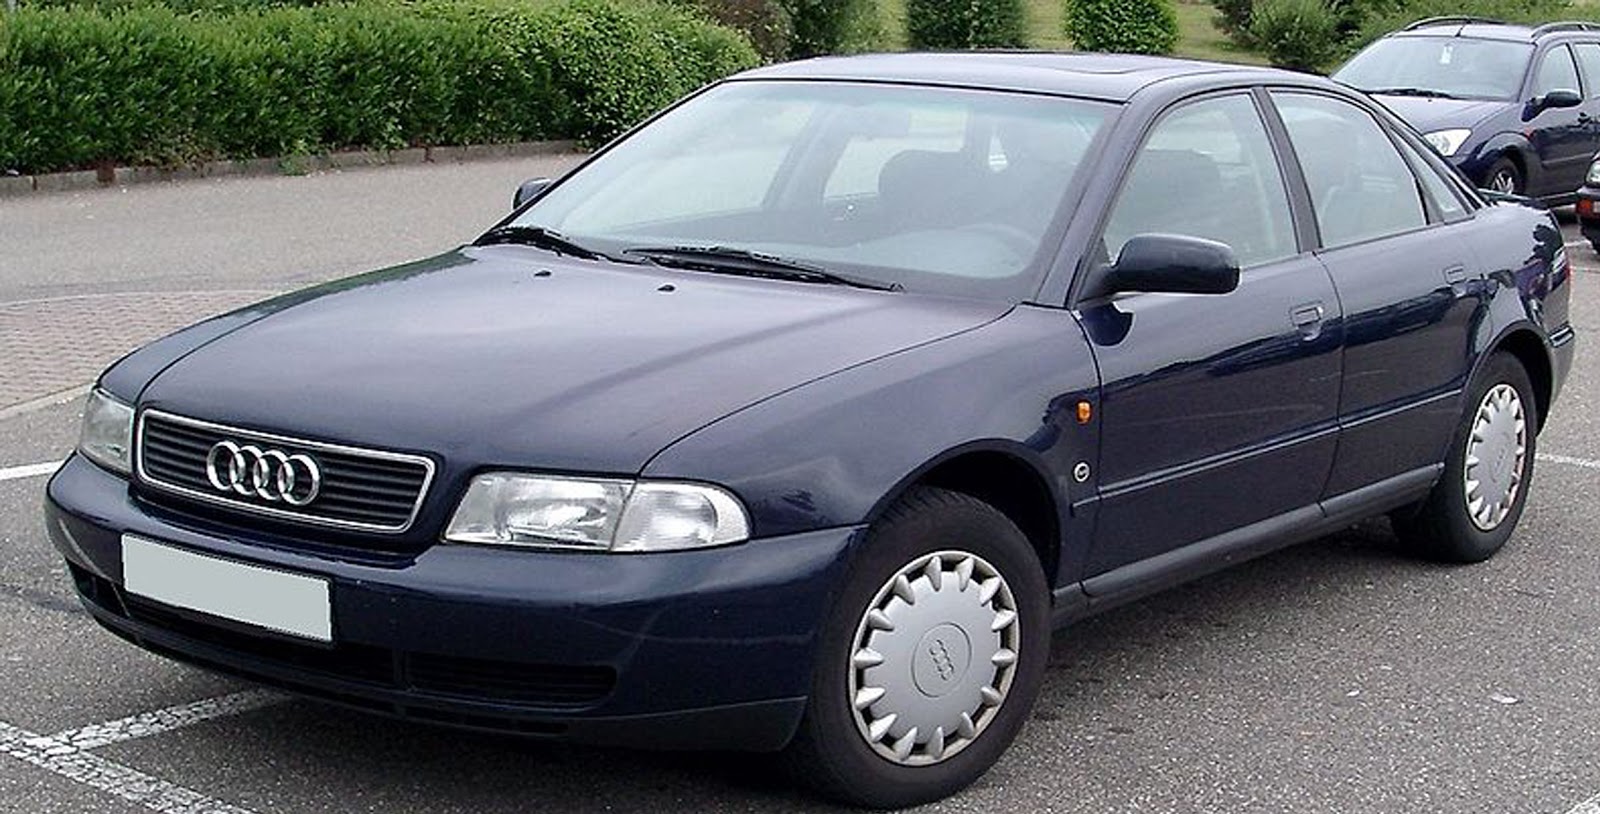 Ауди а4 б5 седан купить. Audi a4 b5 1996. Audi a4 b5 2000. Ауди а4 б5 1996. Audi a4 b5 1995.